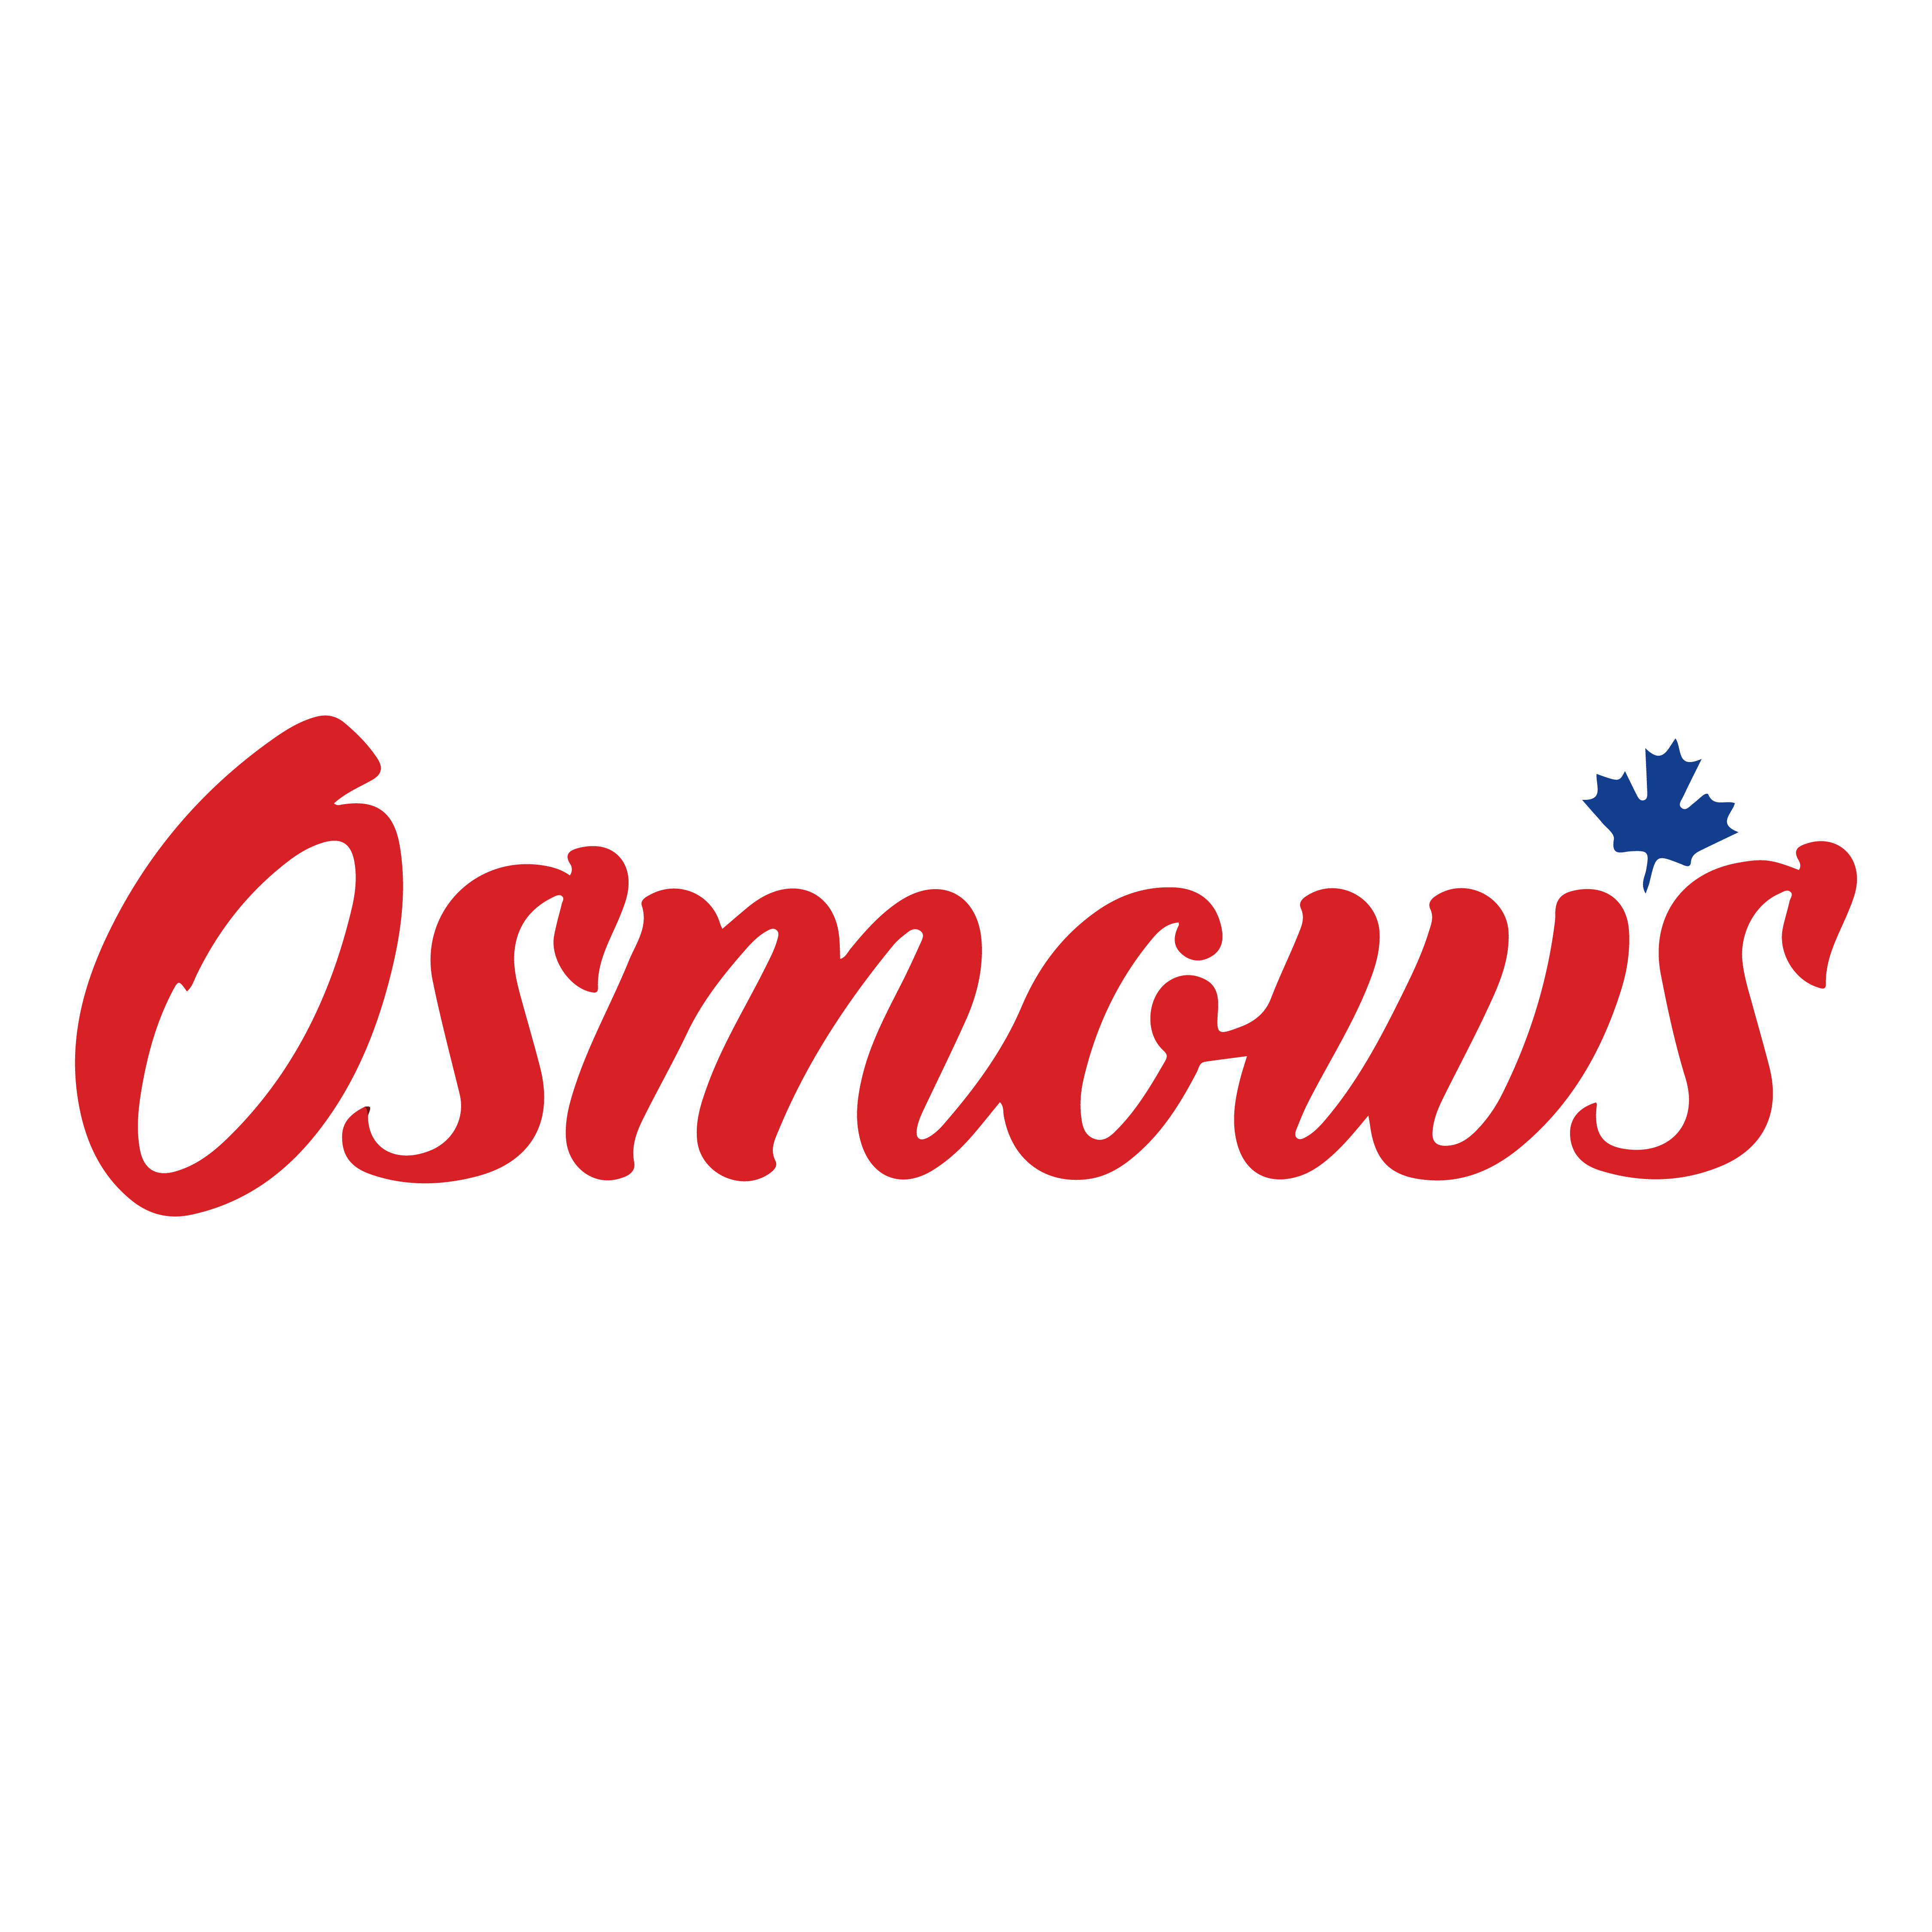 Osmow’s logo